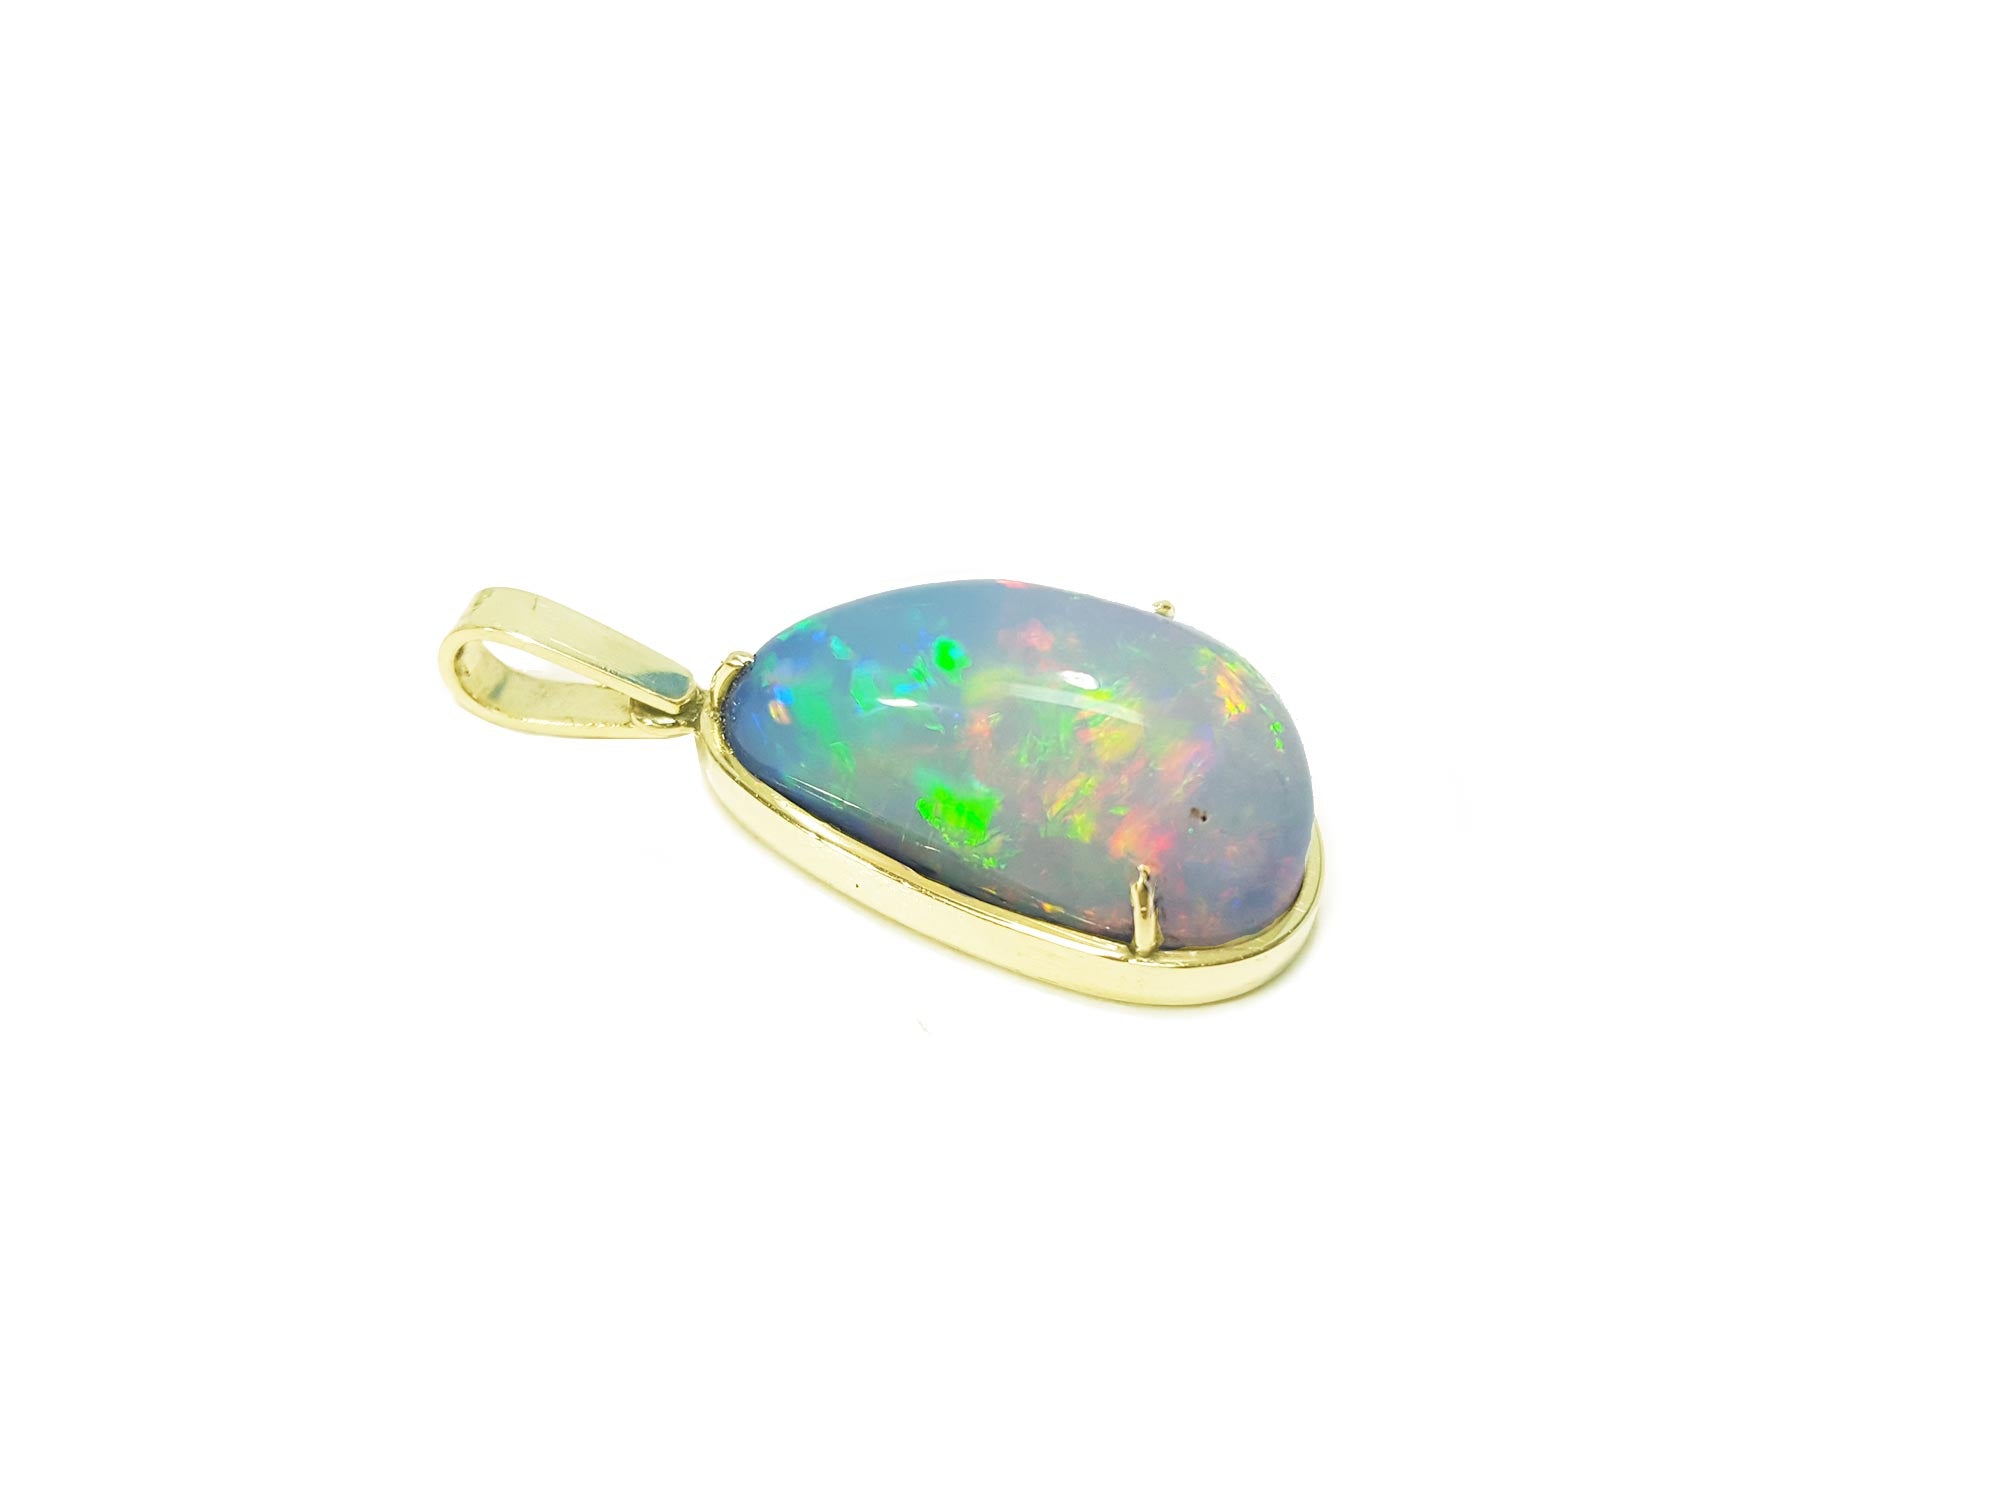 Ethiopian opal necklace